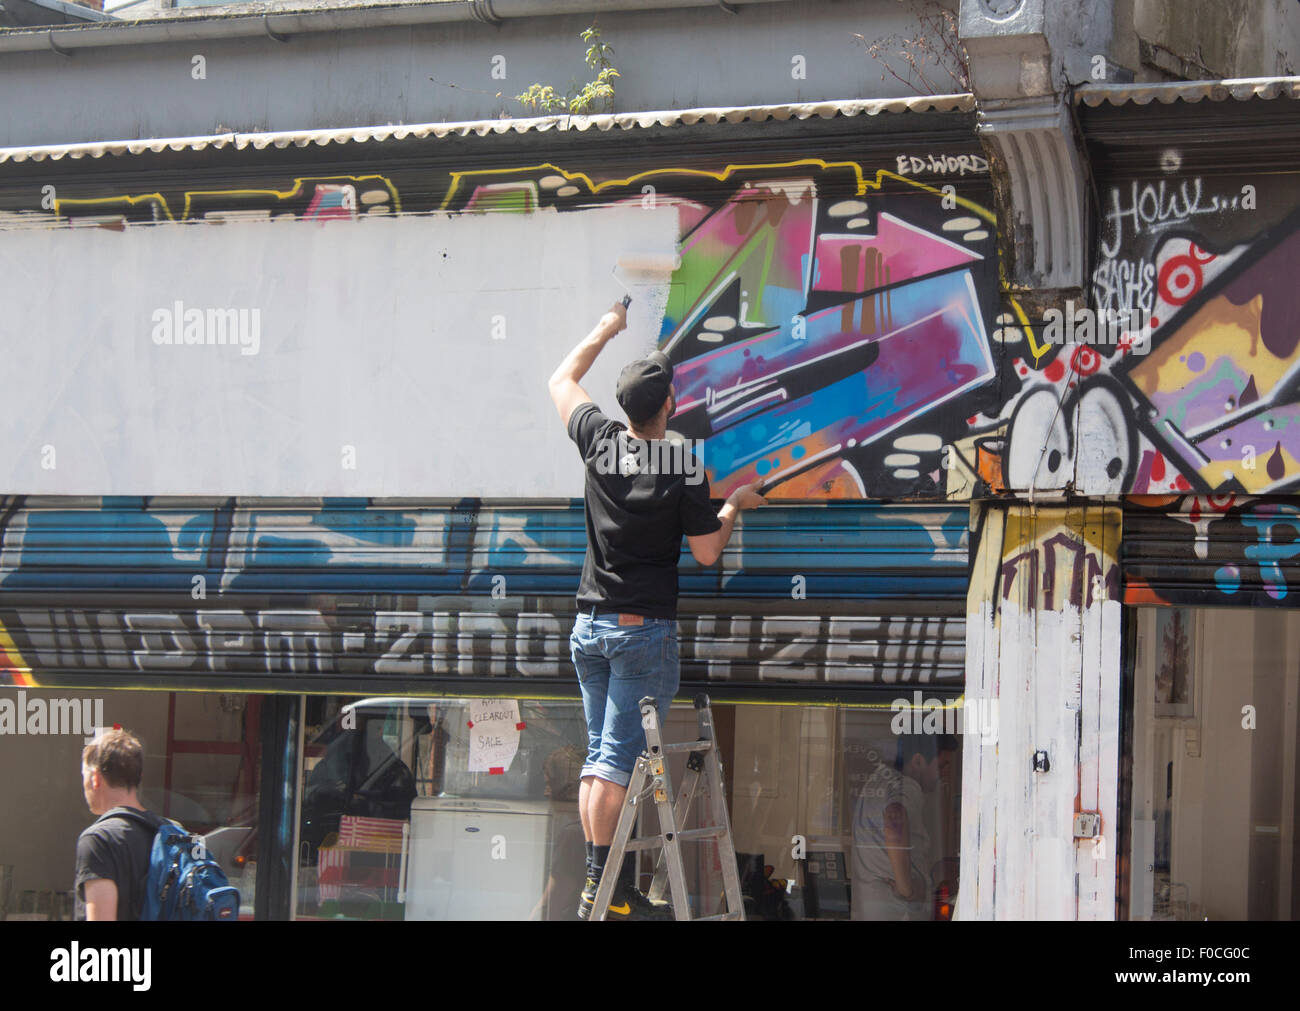 El hombre pintando encima de la eliminación de los grafitos con rodillo y pintura blanca de Brixton Londres England Reino Unido Foto de stock